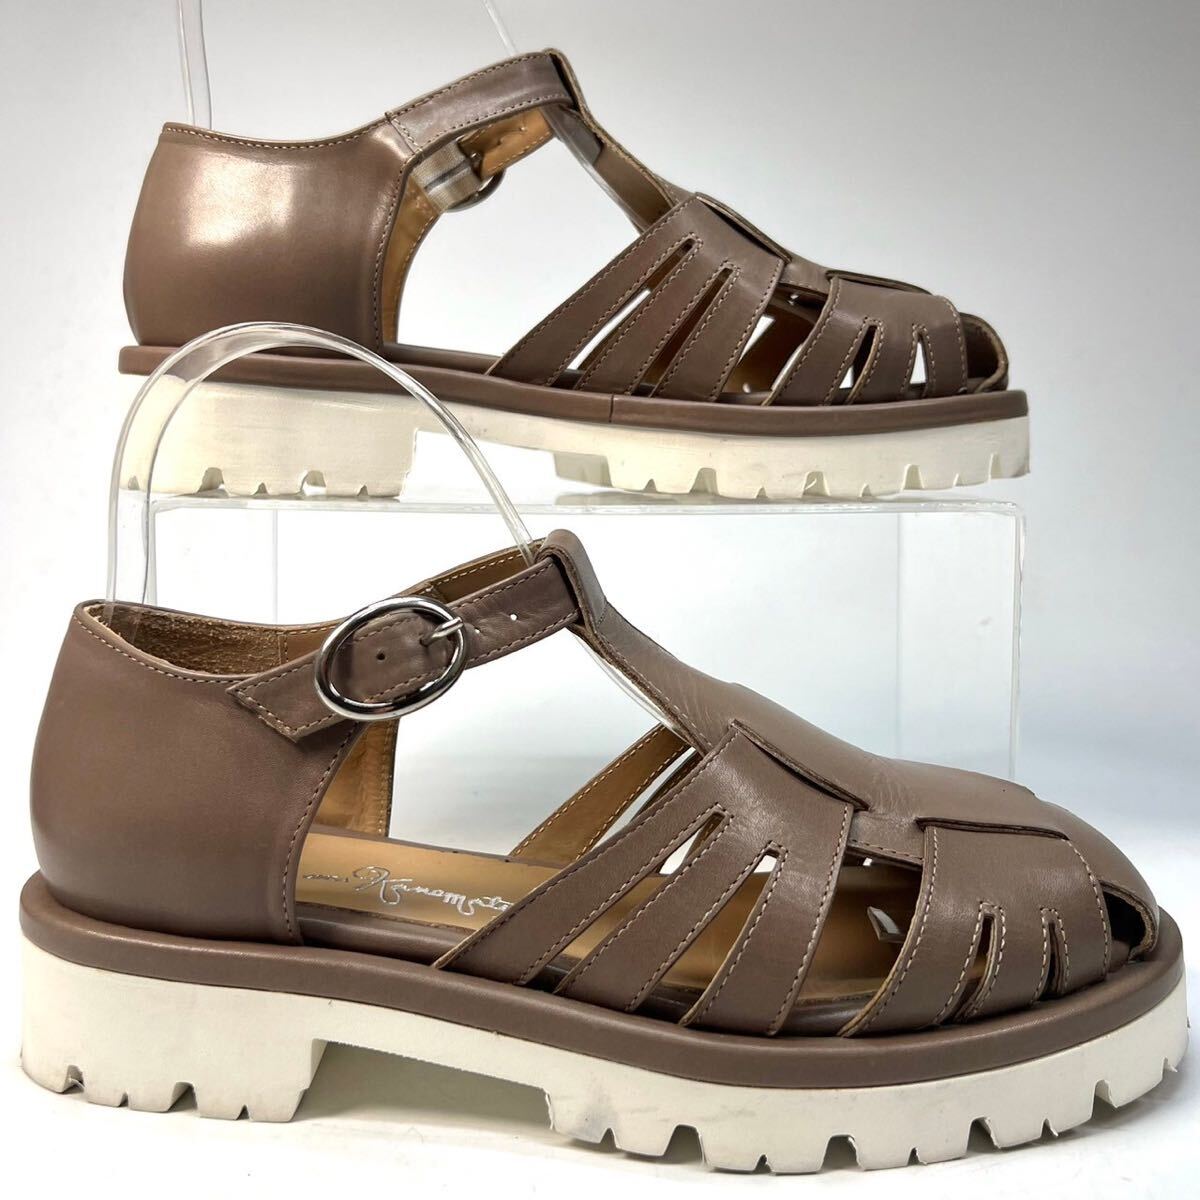 GINZA kanematsu Ginza Kanematsu g LUKA sandals thickness bottom leather 35 1/2 22.5cm lady's shoes shoes gray ju